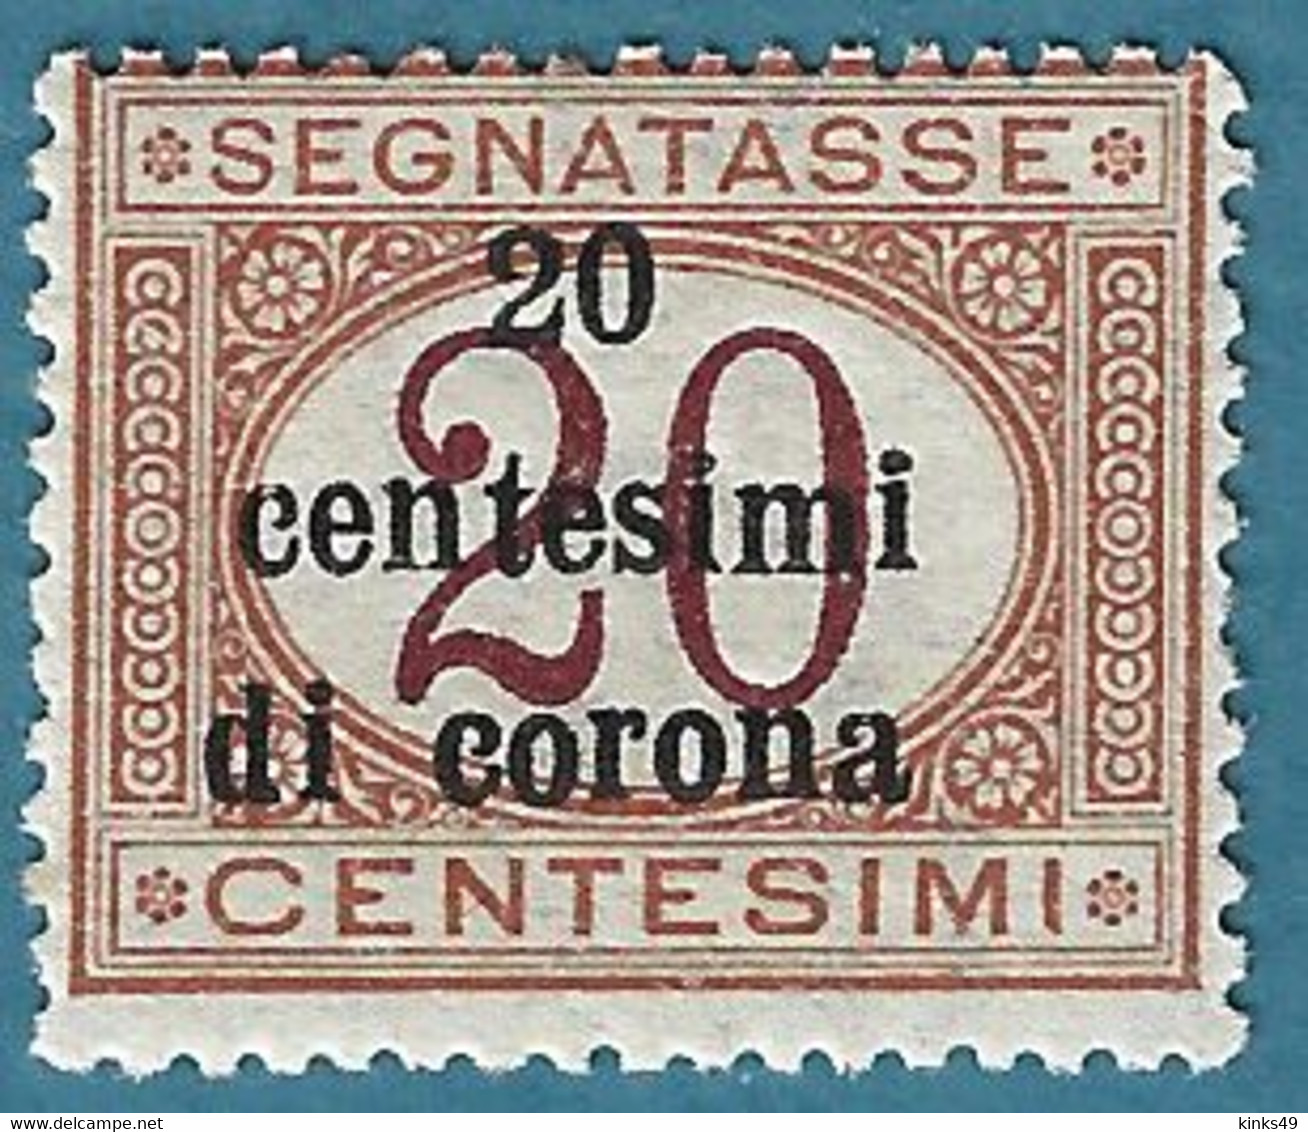 532> ITALIA Regno < TRENTO E TRIESTE Segnatasse Sovrastampati In Centesimi Di Corona > 1919 1 Da Centesimi 20 - Nuovo = - Trente & Trieste